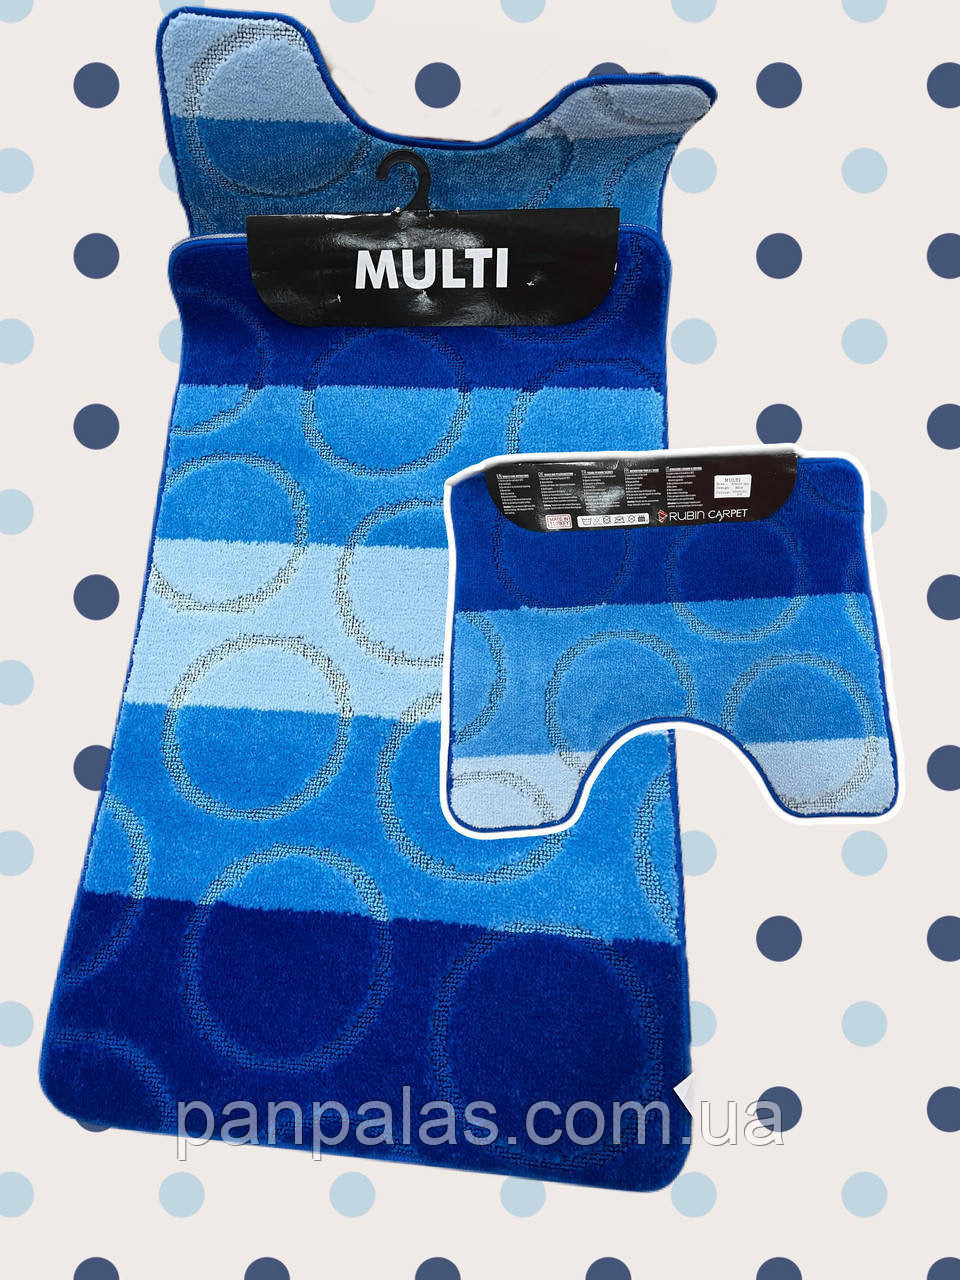 Набір килимків для ванної кімнати, 60*100 (2 одиниці), колір синій